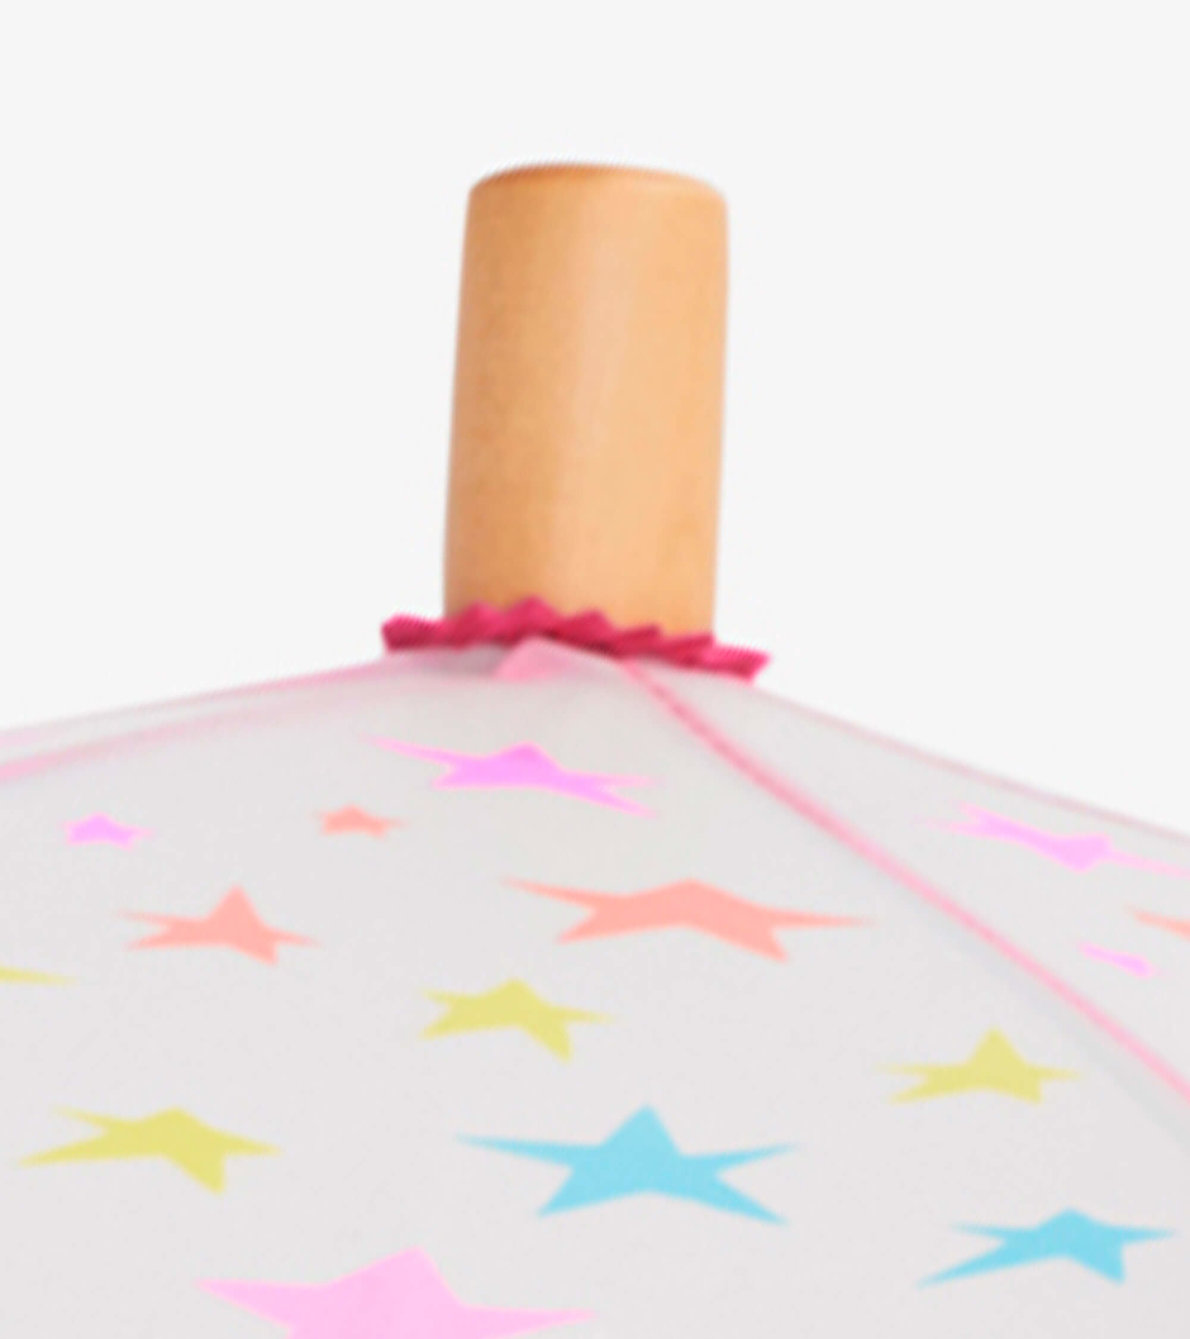 Agrandir l'image de Parapluie pour enfant – Étoiles arc-en-ciel